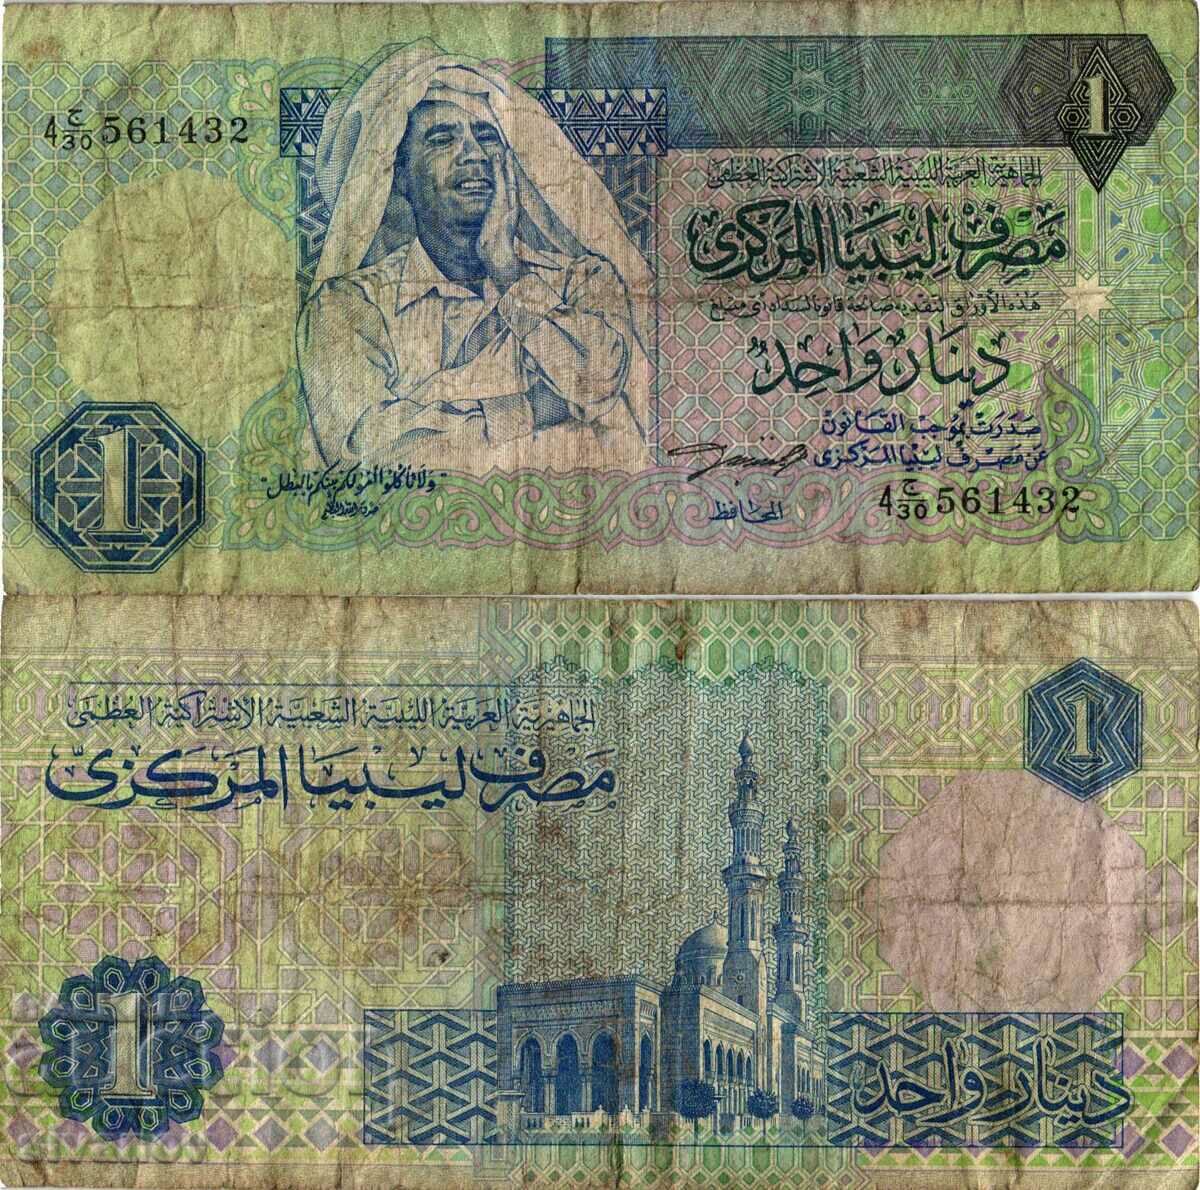 Libia 1 Dinar ND (1991) #4182